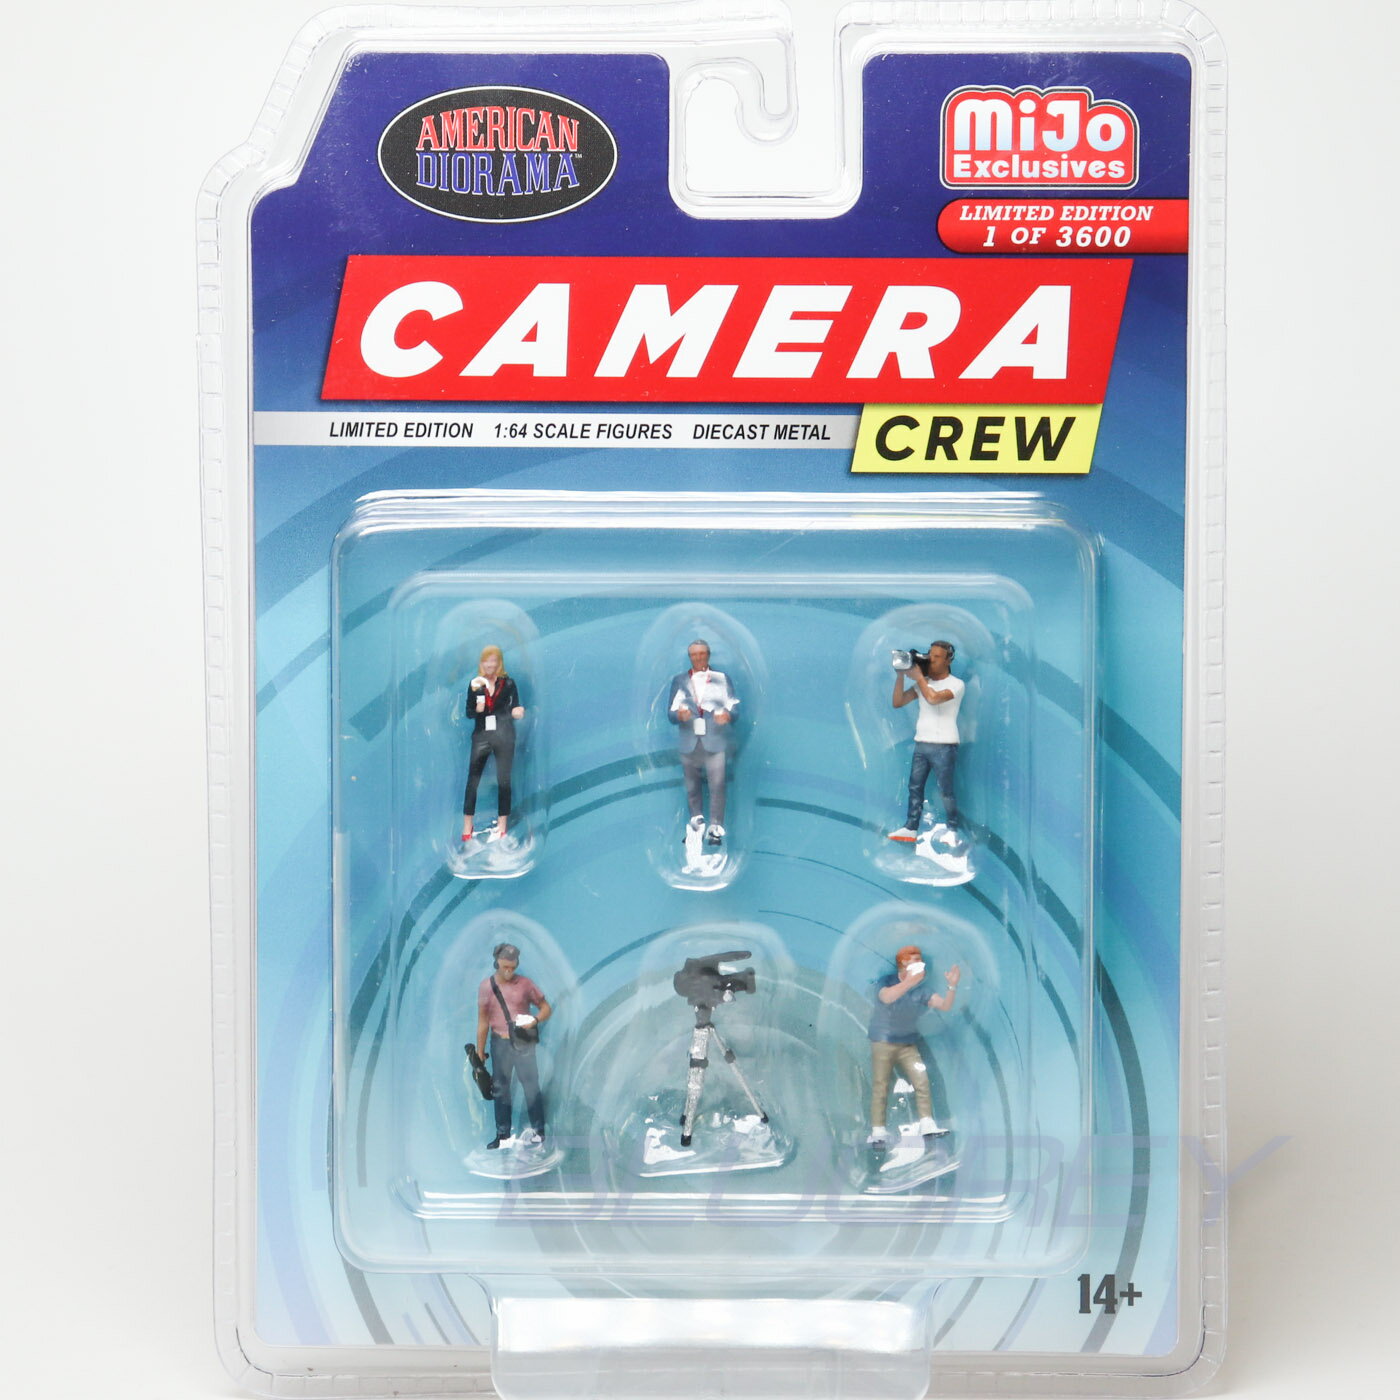 アメリカン ジオラマ 1/64 カメラクルー フィギア セット American Diorama Camera Crew Figure MiJo